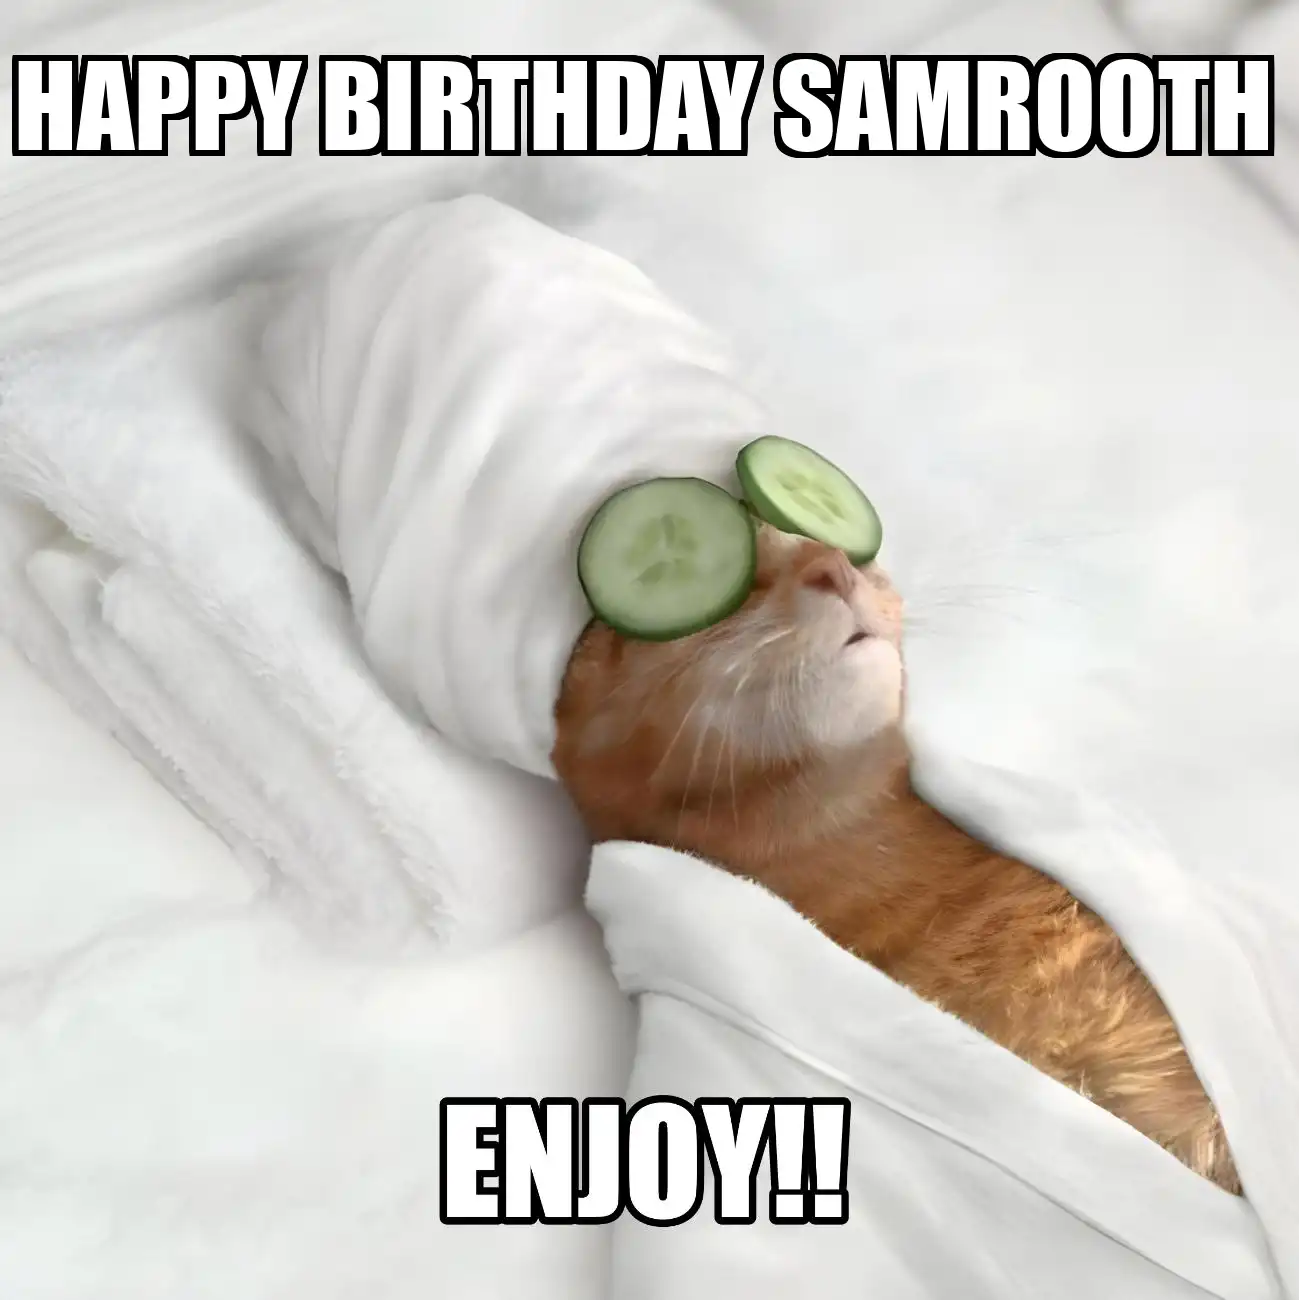 Happy Birthday Samrooth Enjoy Cat Meme